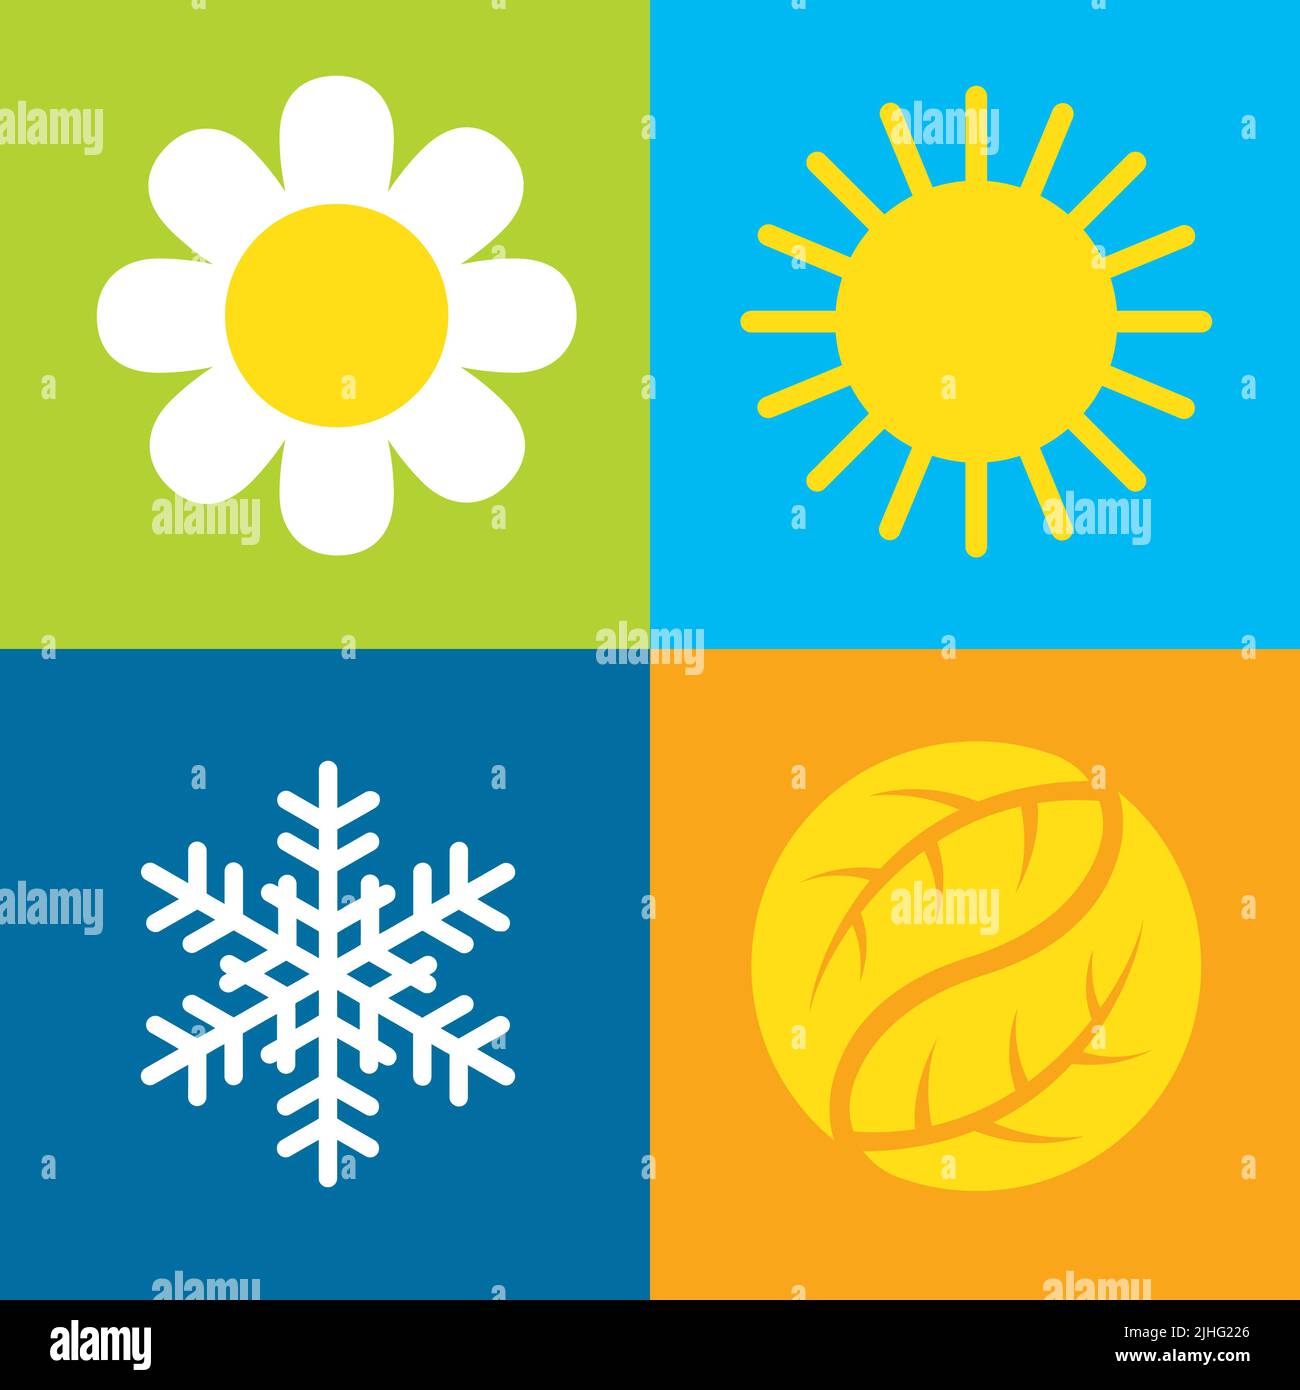 Vektorsymbole für vier Jahreszeiten. Satz von vier Vektorsymbolen auf farbenfrohen Hintergründen, die jede der vier Jahreszeiten, Frühling, Sommer, Herbst, Winter, darstellen. Stock Vektor